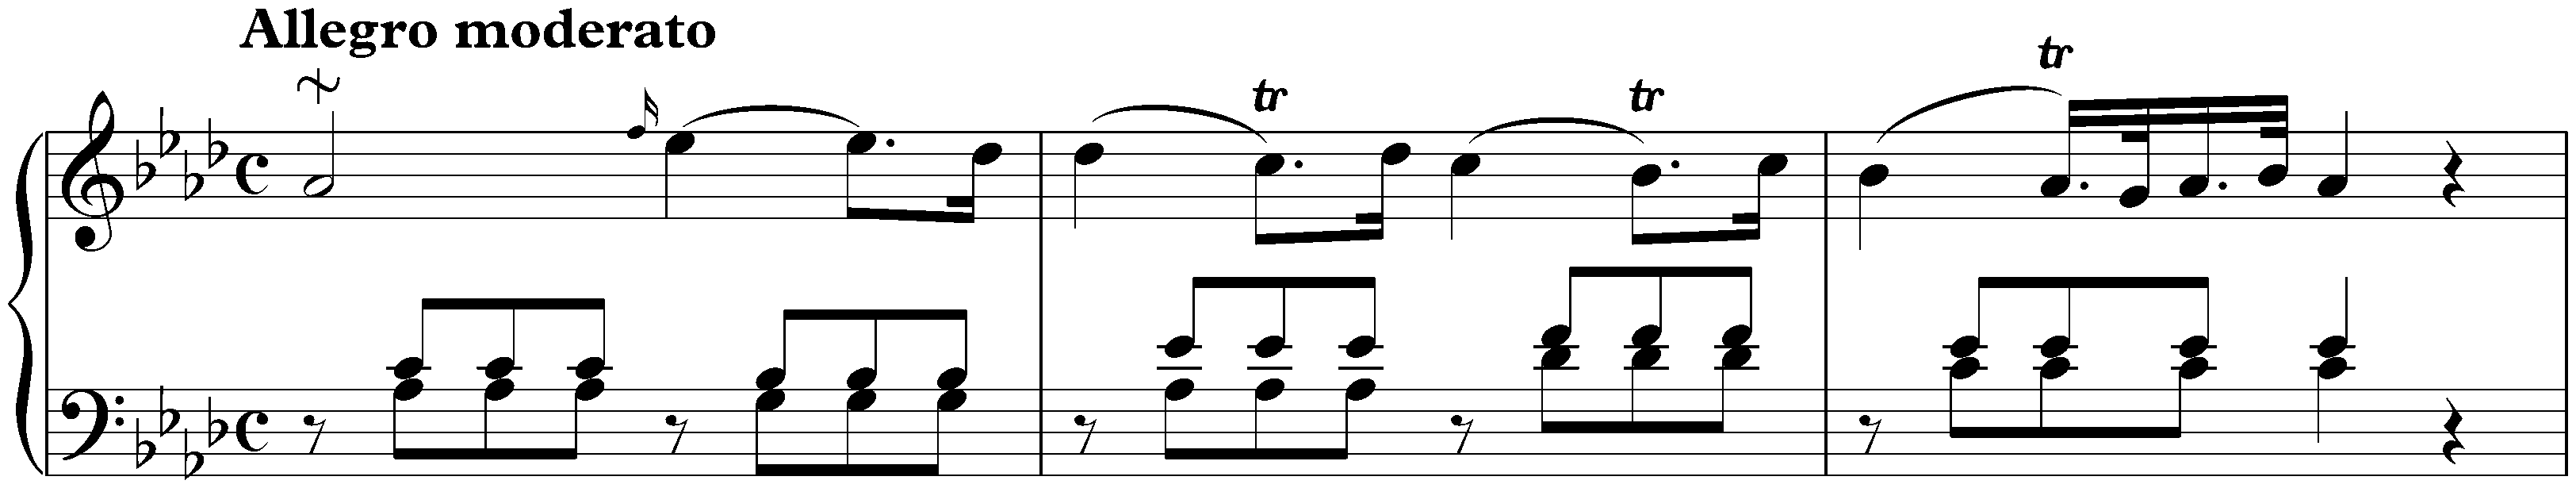 Sonata in A-flat major, Hob. XVI:46; 1. Allegro moderato